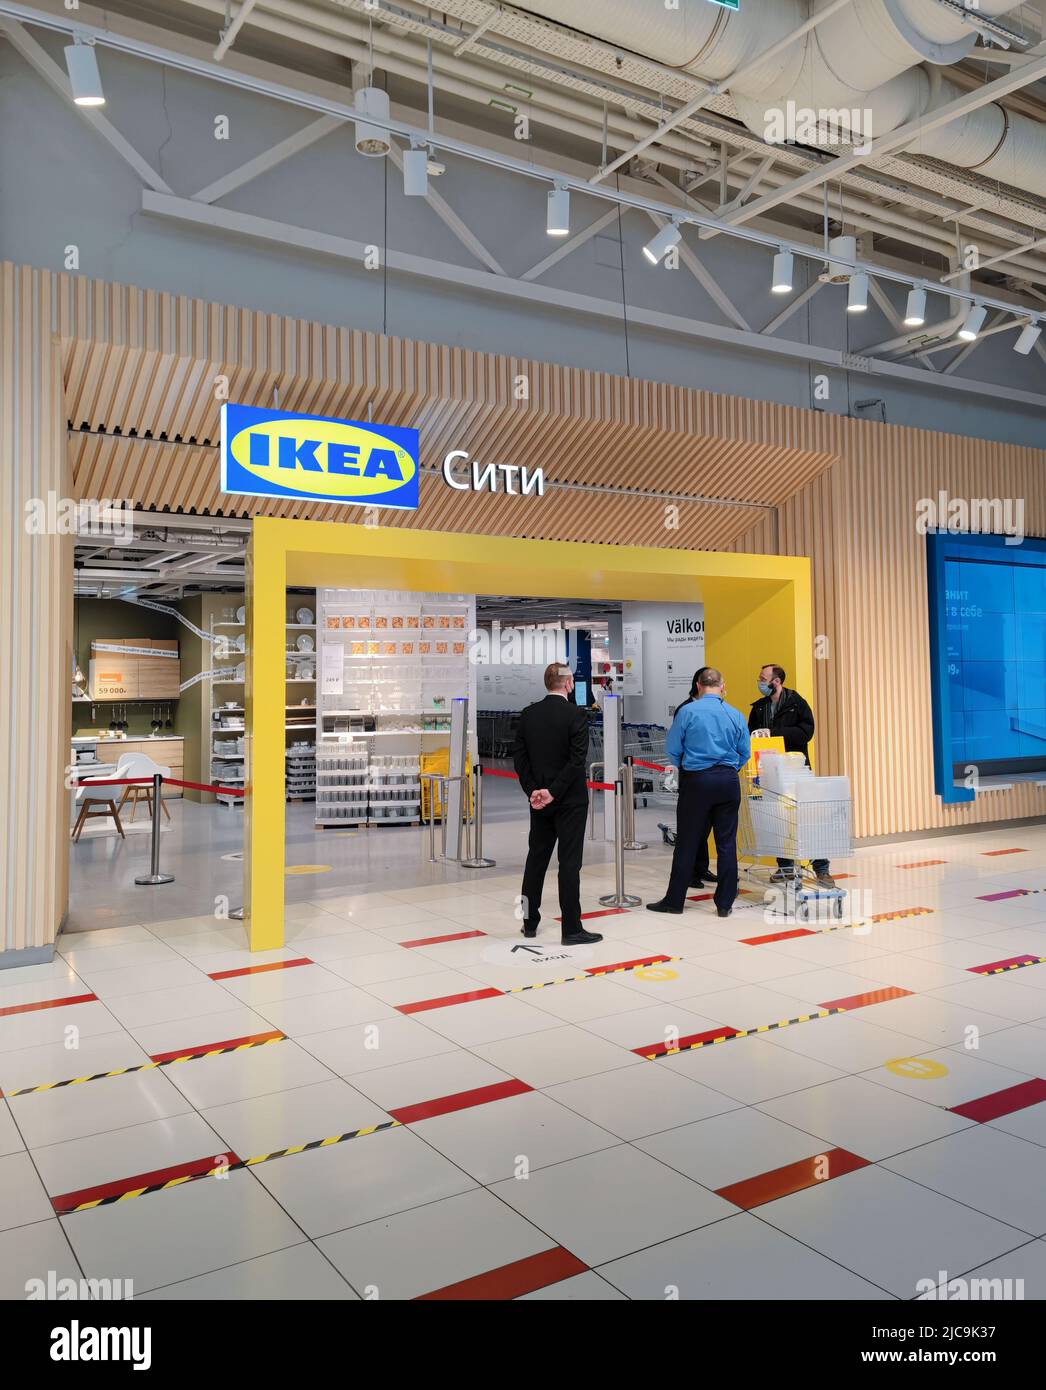 Moscou, Russie, 2022 mars : entrée au magasin IKEA. Les gardes parlent à un homme en noir avec des achats. À l'intérieur, vous pouvez voir des étagères avec des marchandises. Banque D'Images